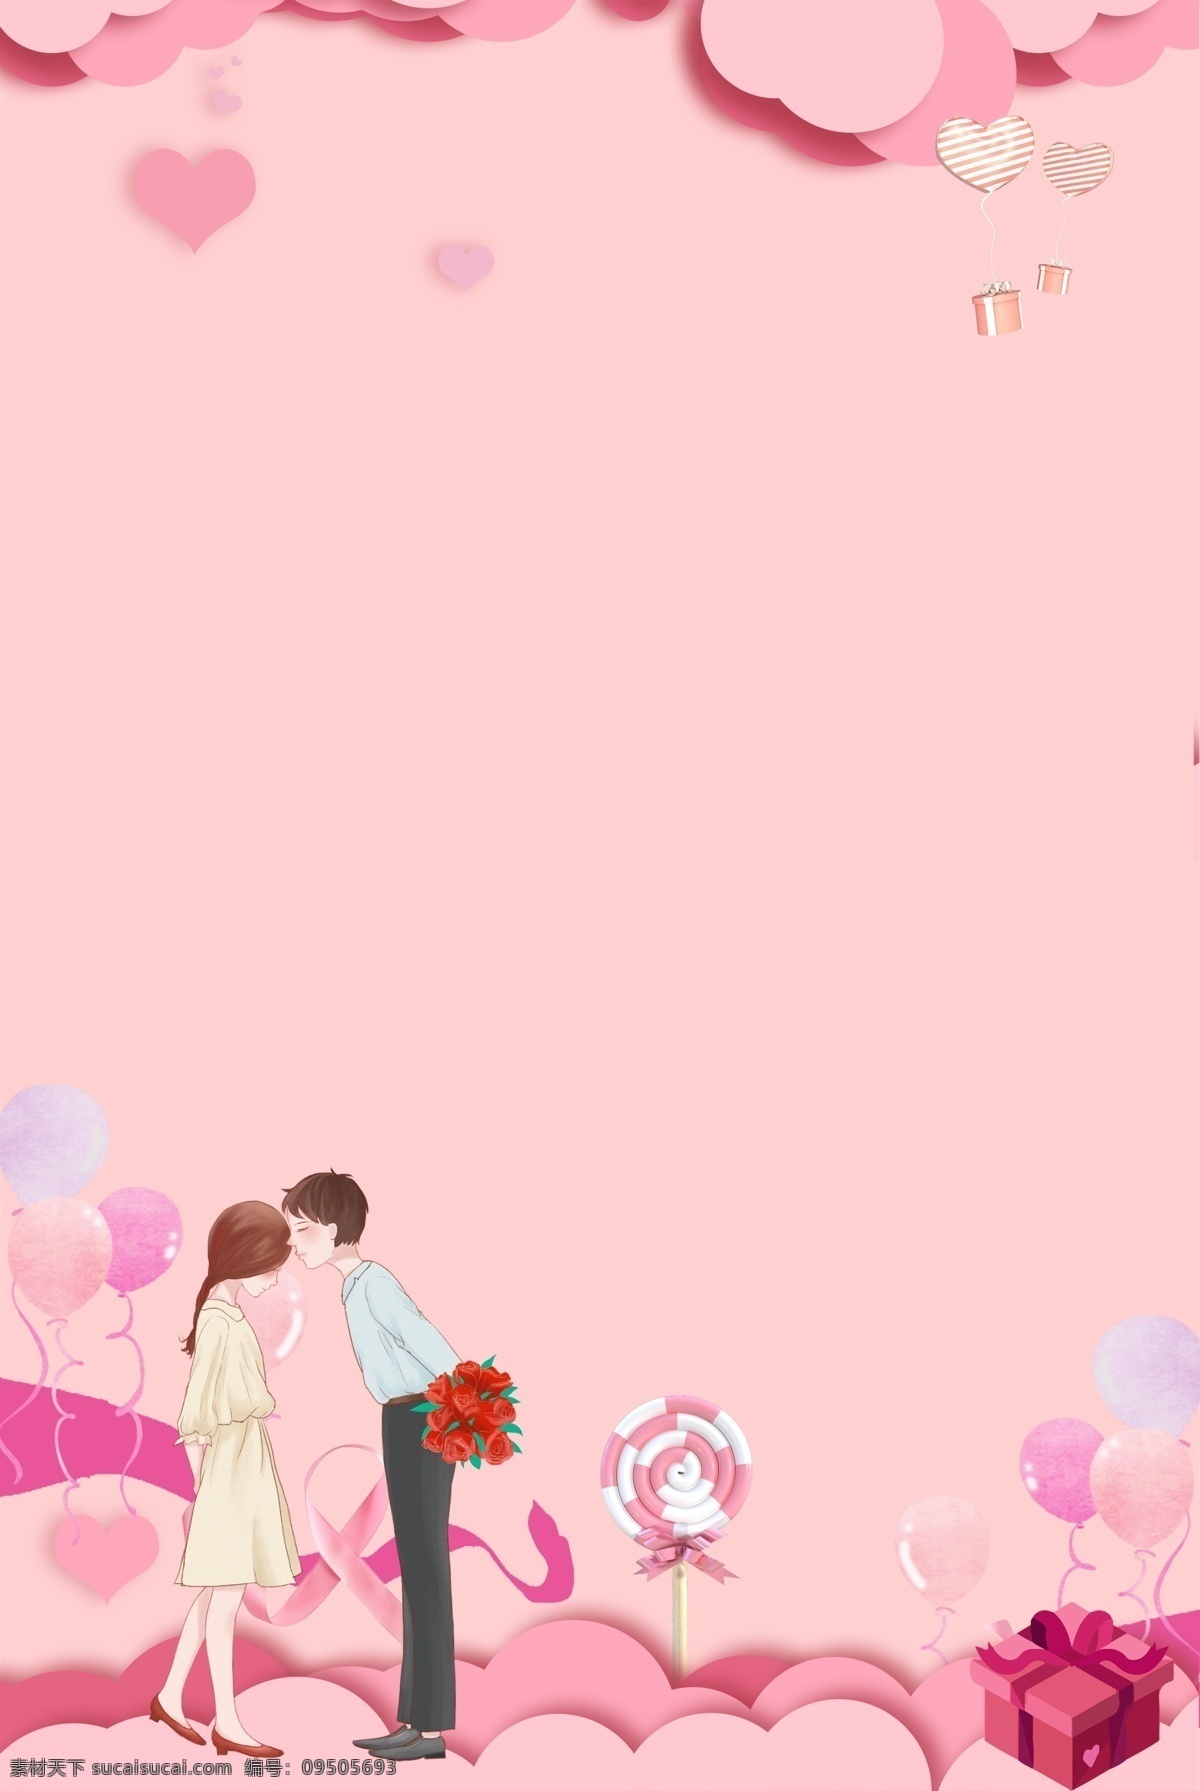 情人节 粉色 云朵 框架 心形 气球 手绘 背景 丝带